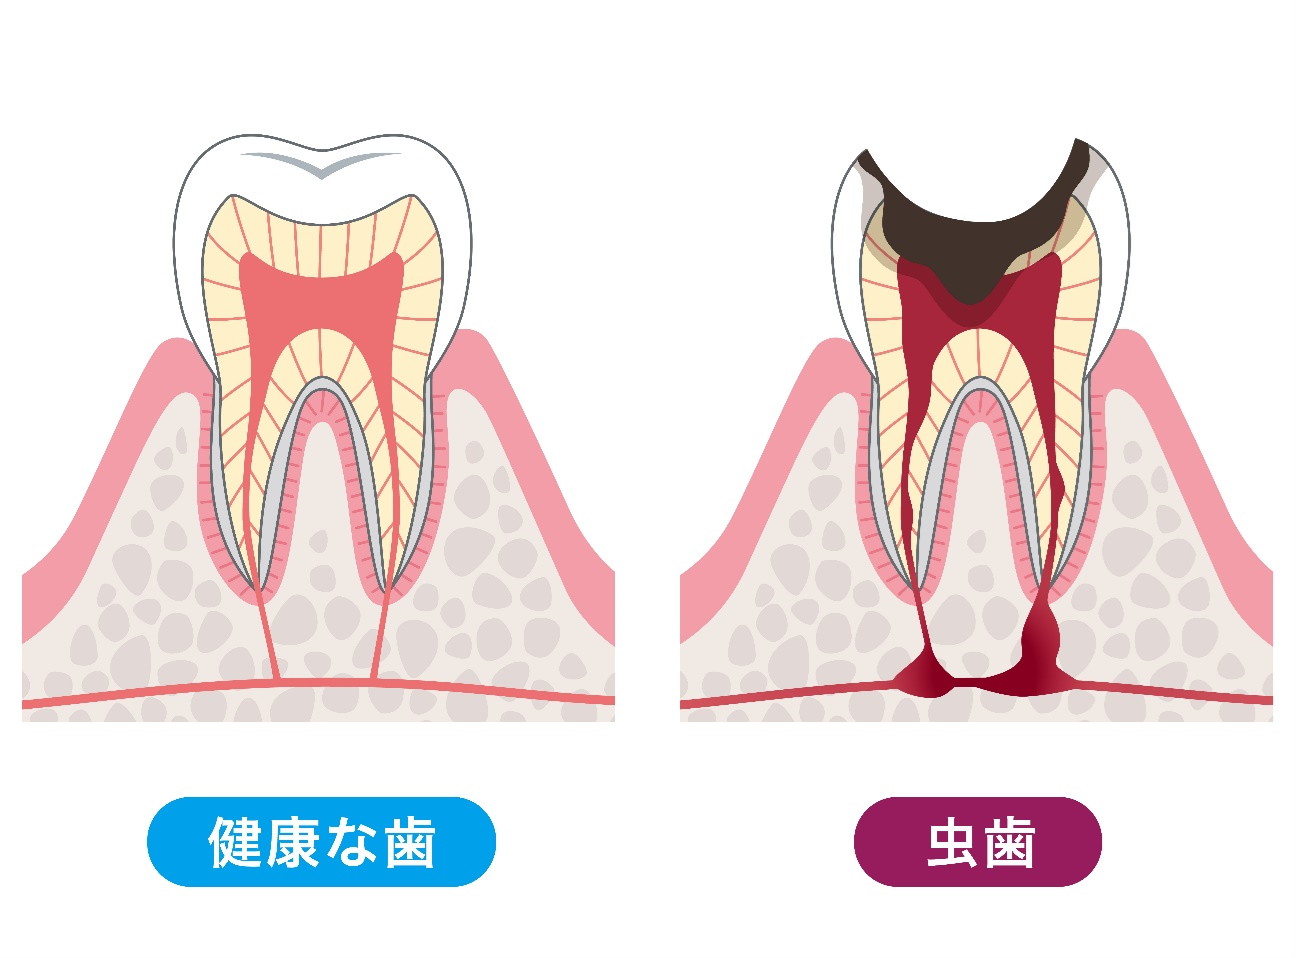 健康な歯と虫歯が神経まで侵食してしまっている状態を比較